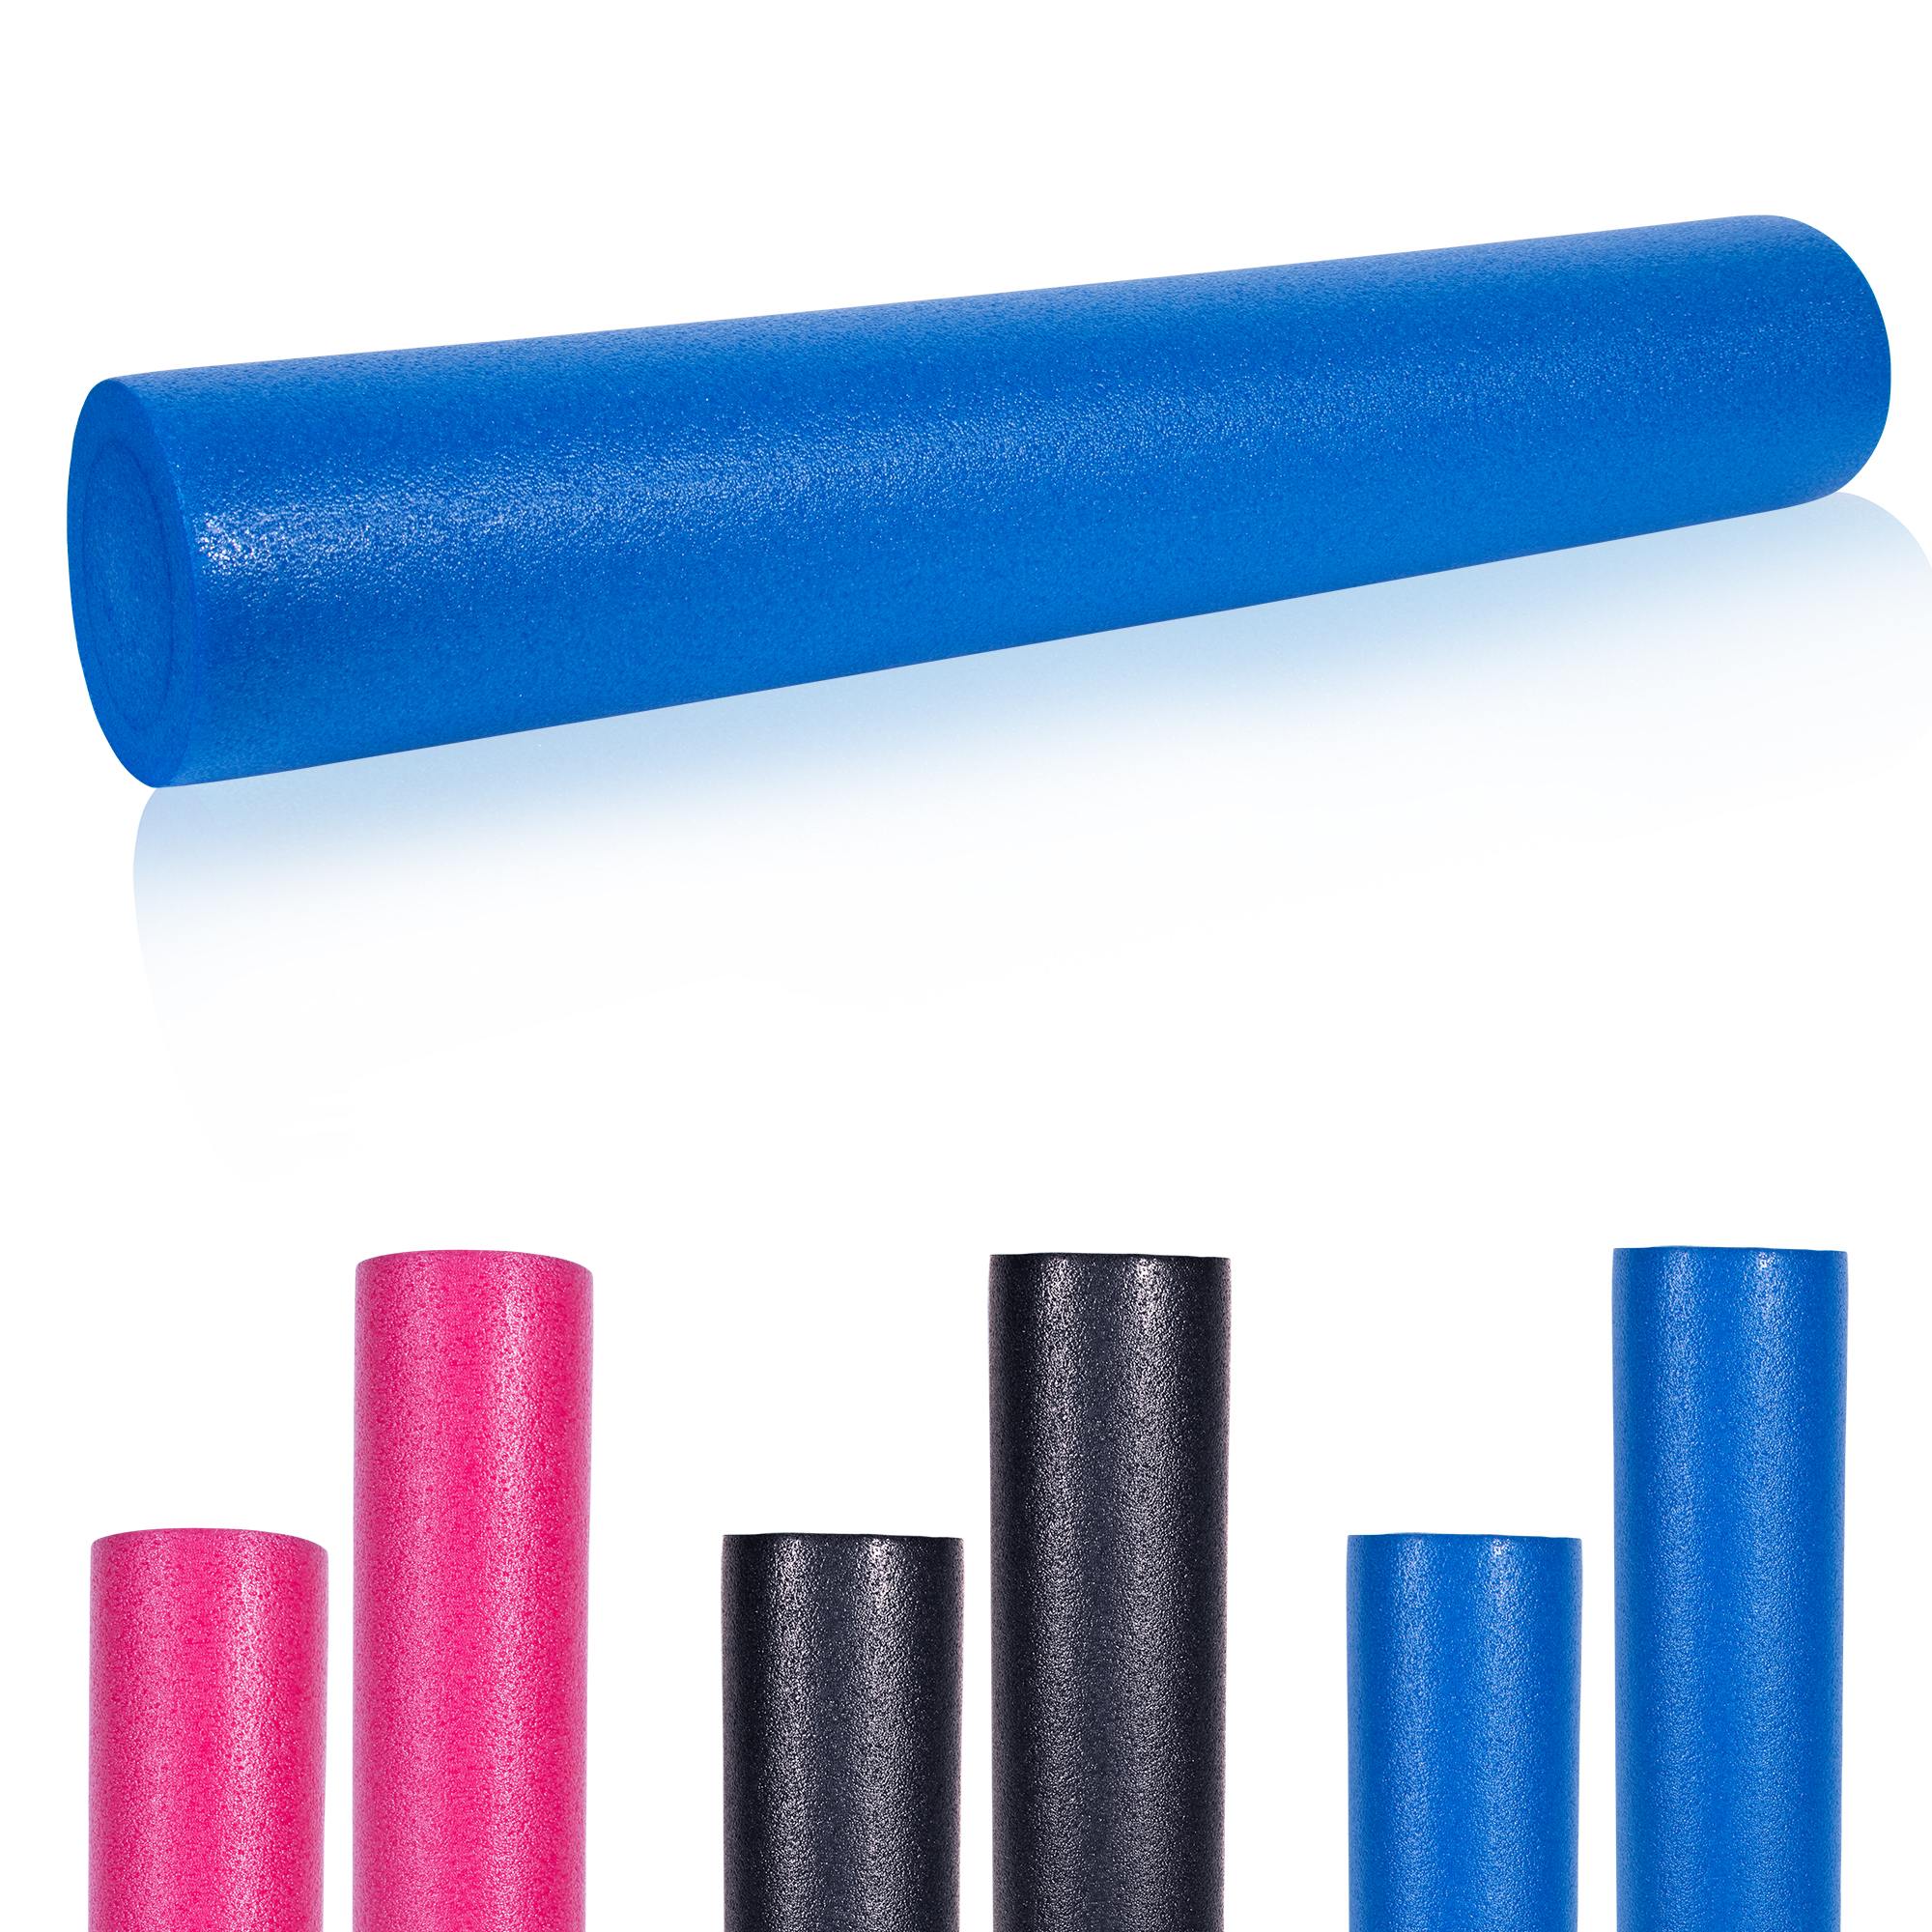 GORILLA SPORTSÂ® Rouleau de Pilates en mousse 90 x 15 cm - Rouleau de yoga pour l'auto-massage et la stimulation des fascias - Coloris bleu